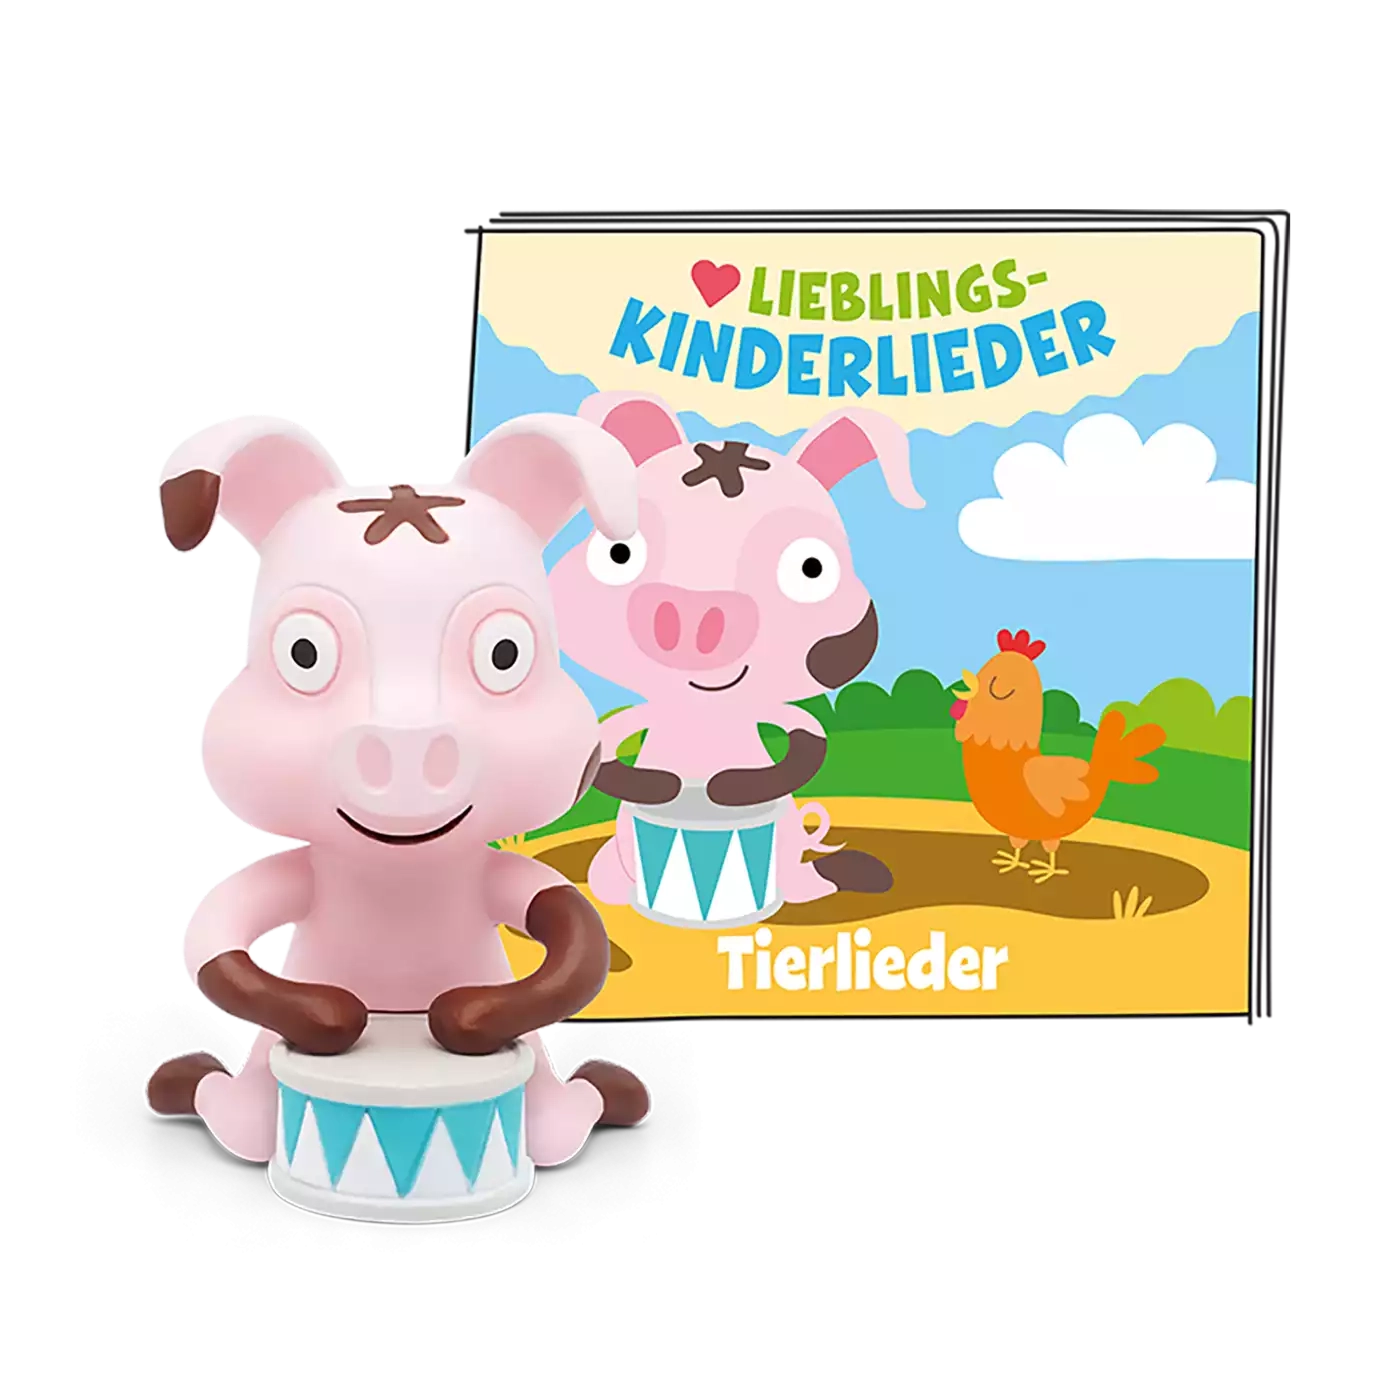 Lieblings-Kinderlieder - Tierlieder (Neuauflage) tonies 2000581835907 1